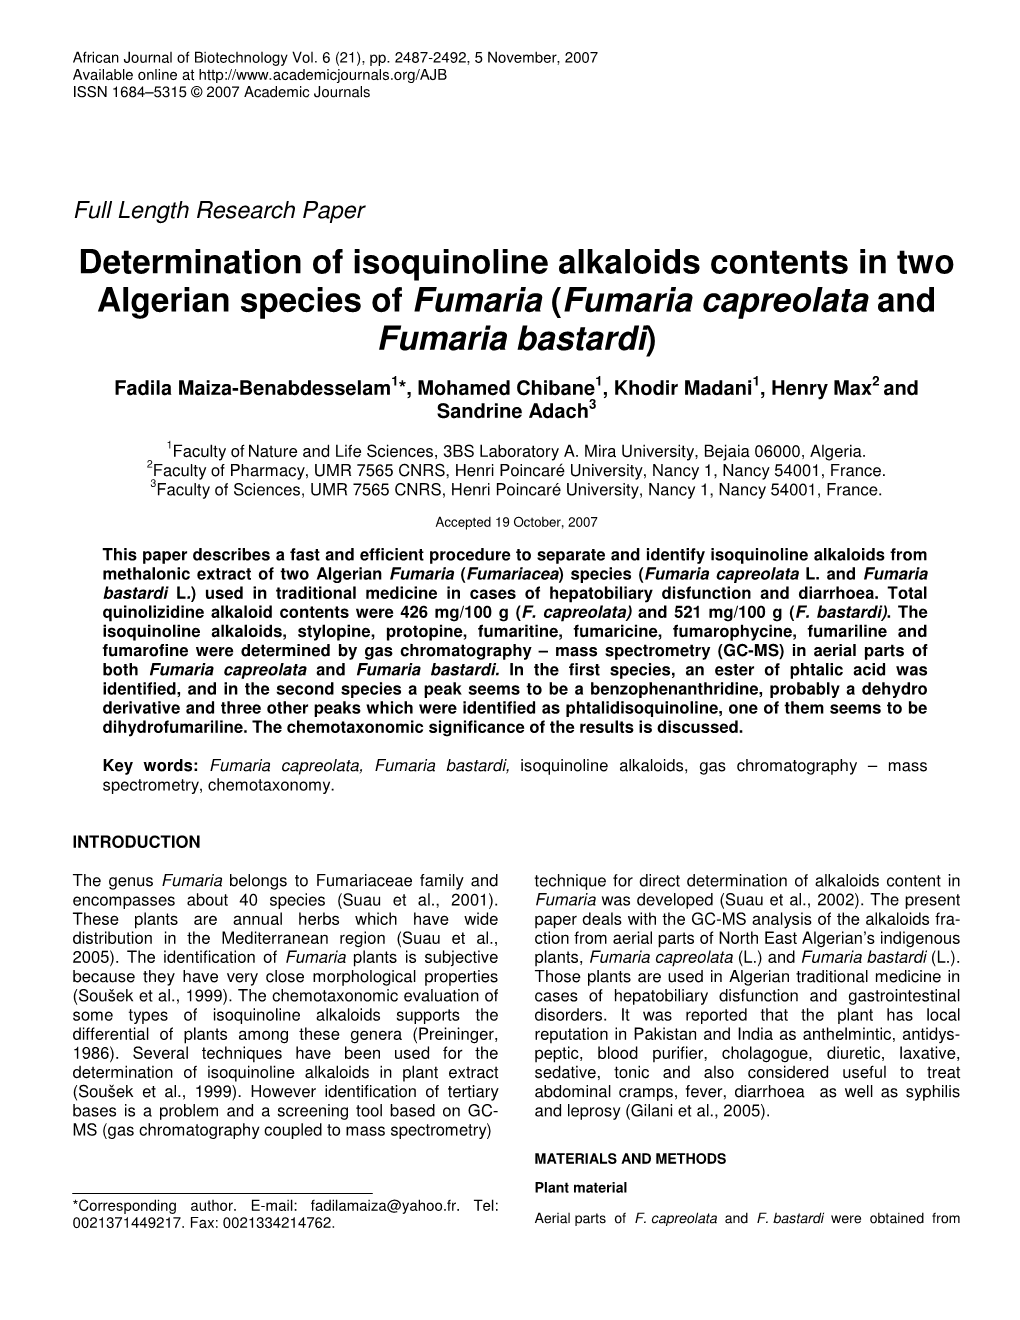 Determination of Isoquinoline Alkaloids Contents in Two Algerian Species of Fumaria (Fumaria Capreolata and Fumaria Bastardi)